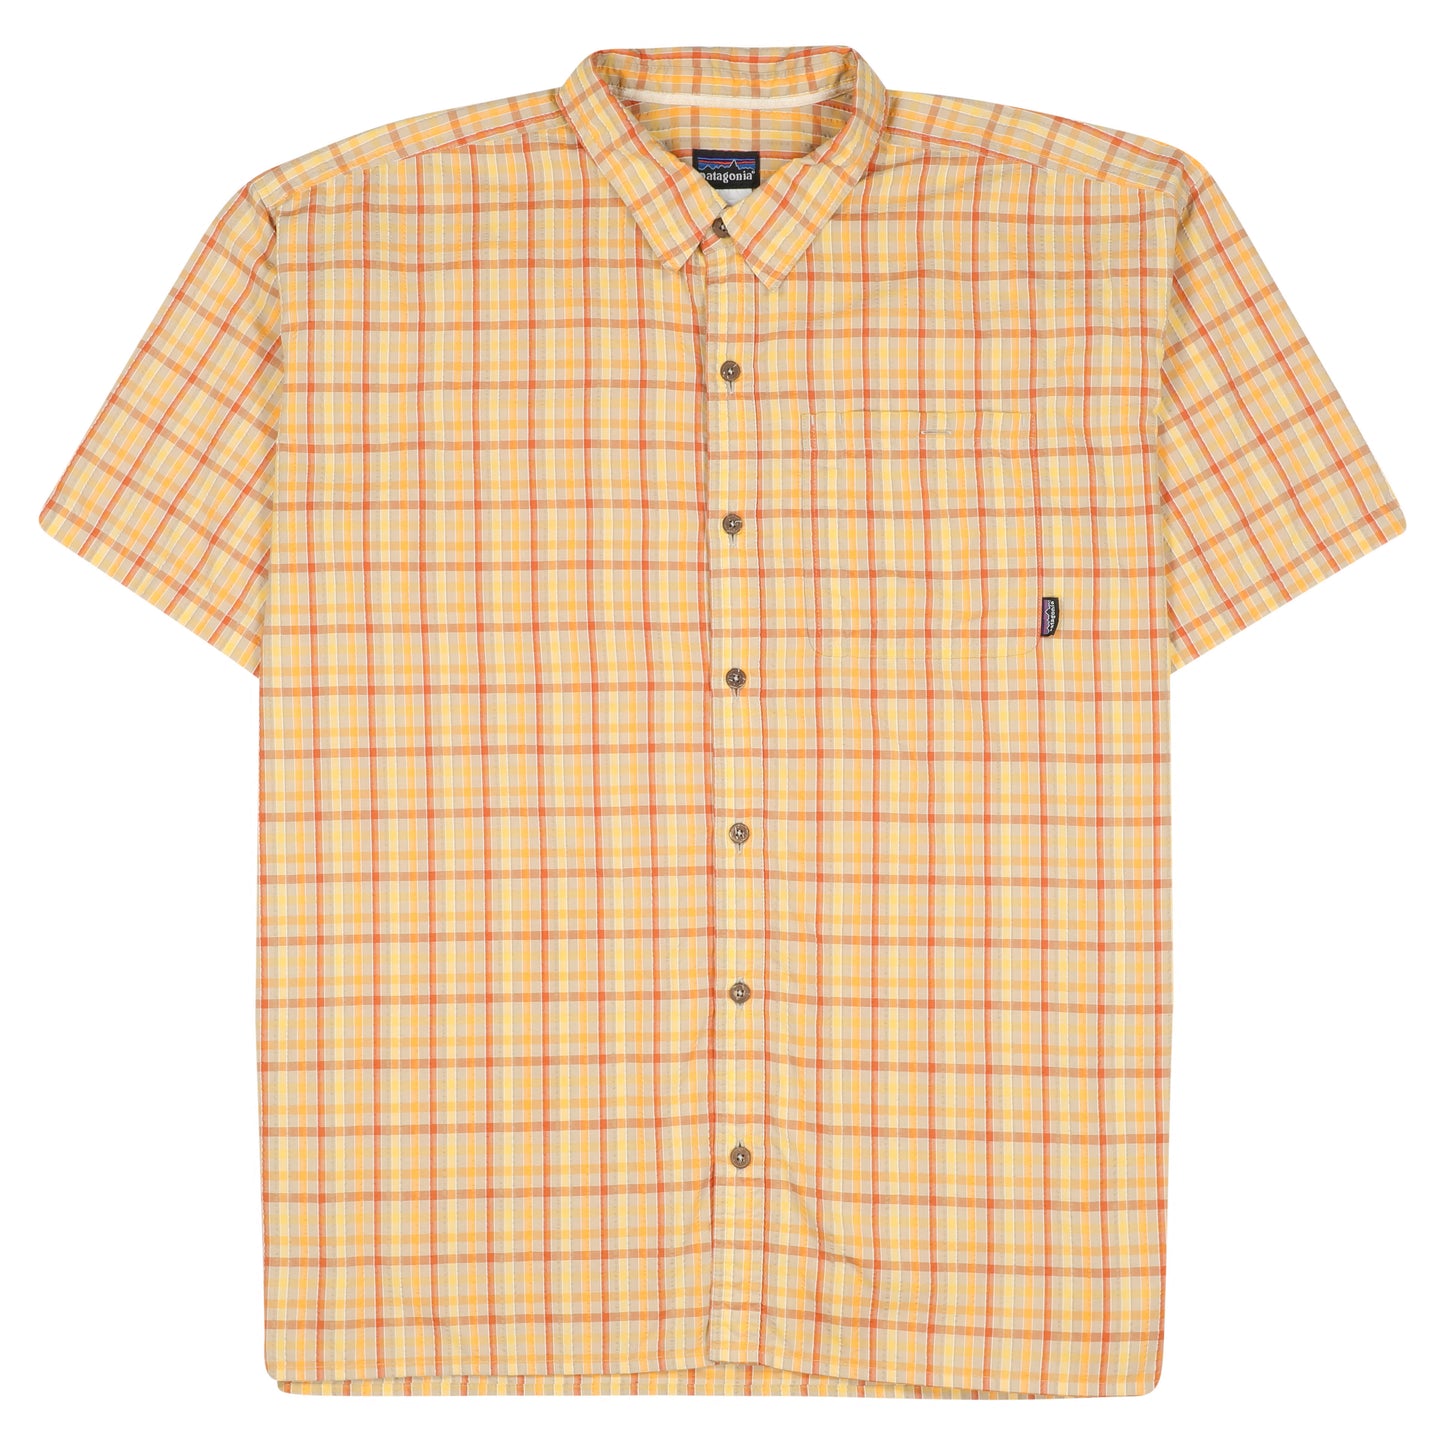 Men's Short-Sleeved Puckerware Shirt